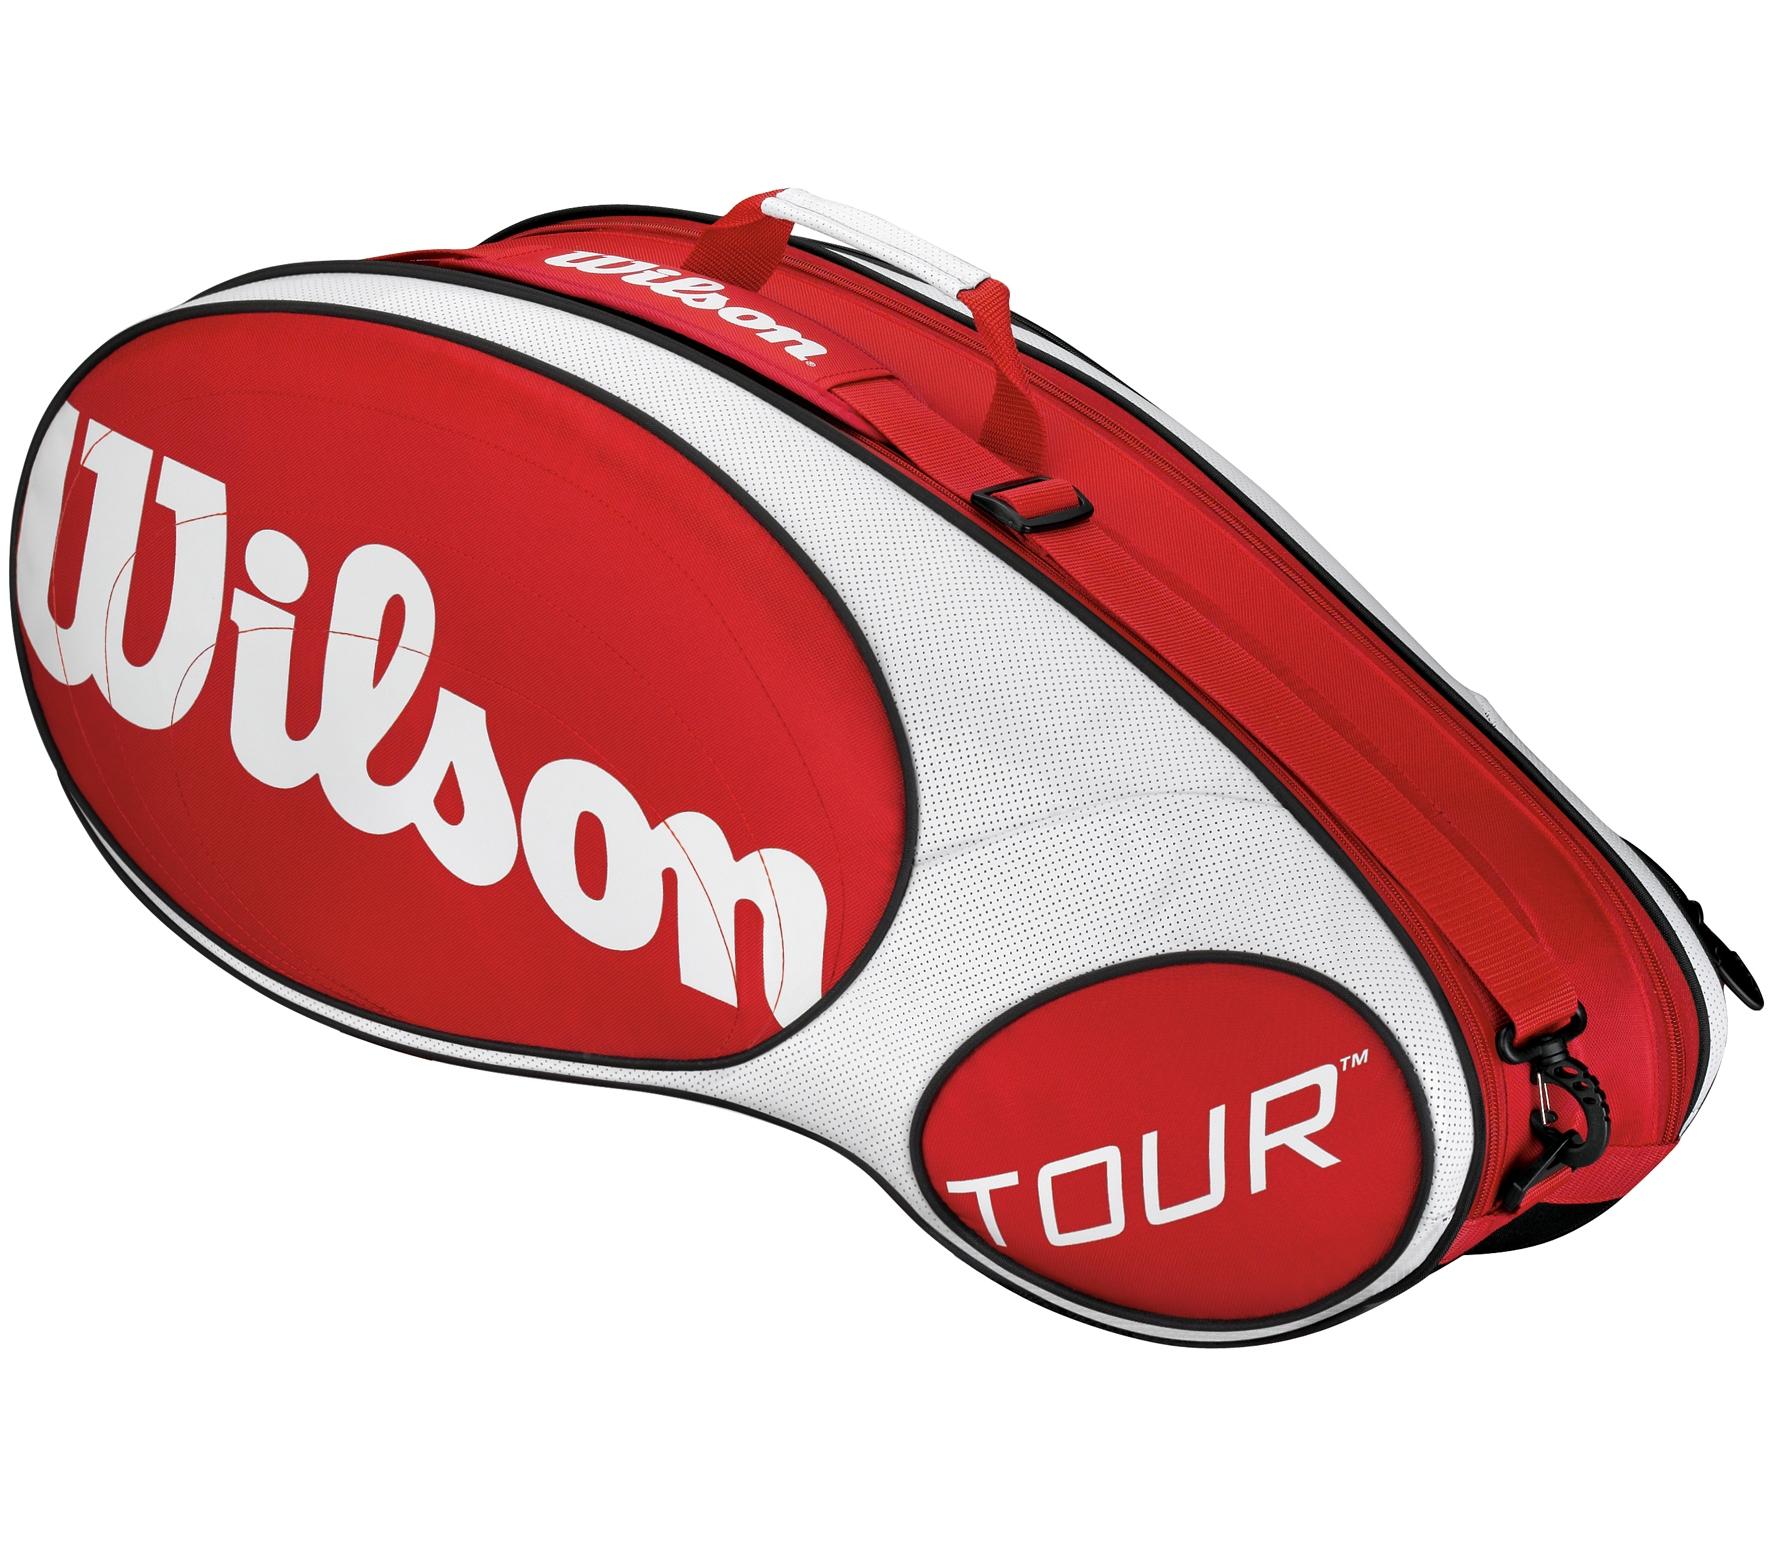 Foto Wilson - Raquetero Tour 6 rojo/blanco